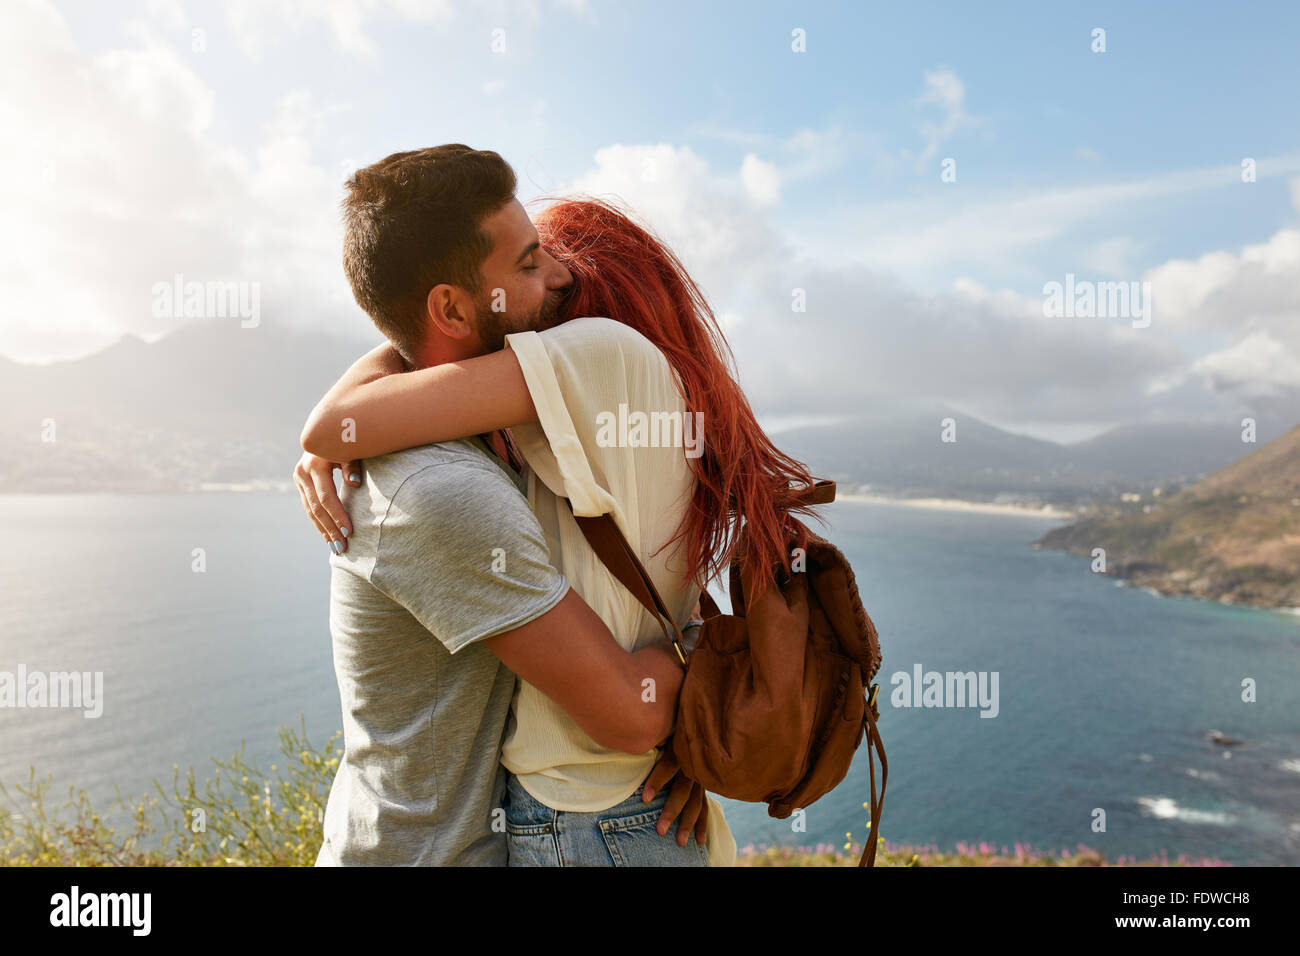 Portrait über ein glückliches junges Paar eine romantische Umarmung im Freien zu genießen. Junger Mann umarmt seine Freundin beim stehen auf einem Hügel Stockfoto